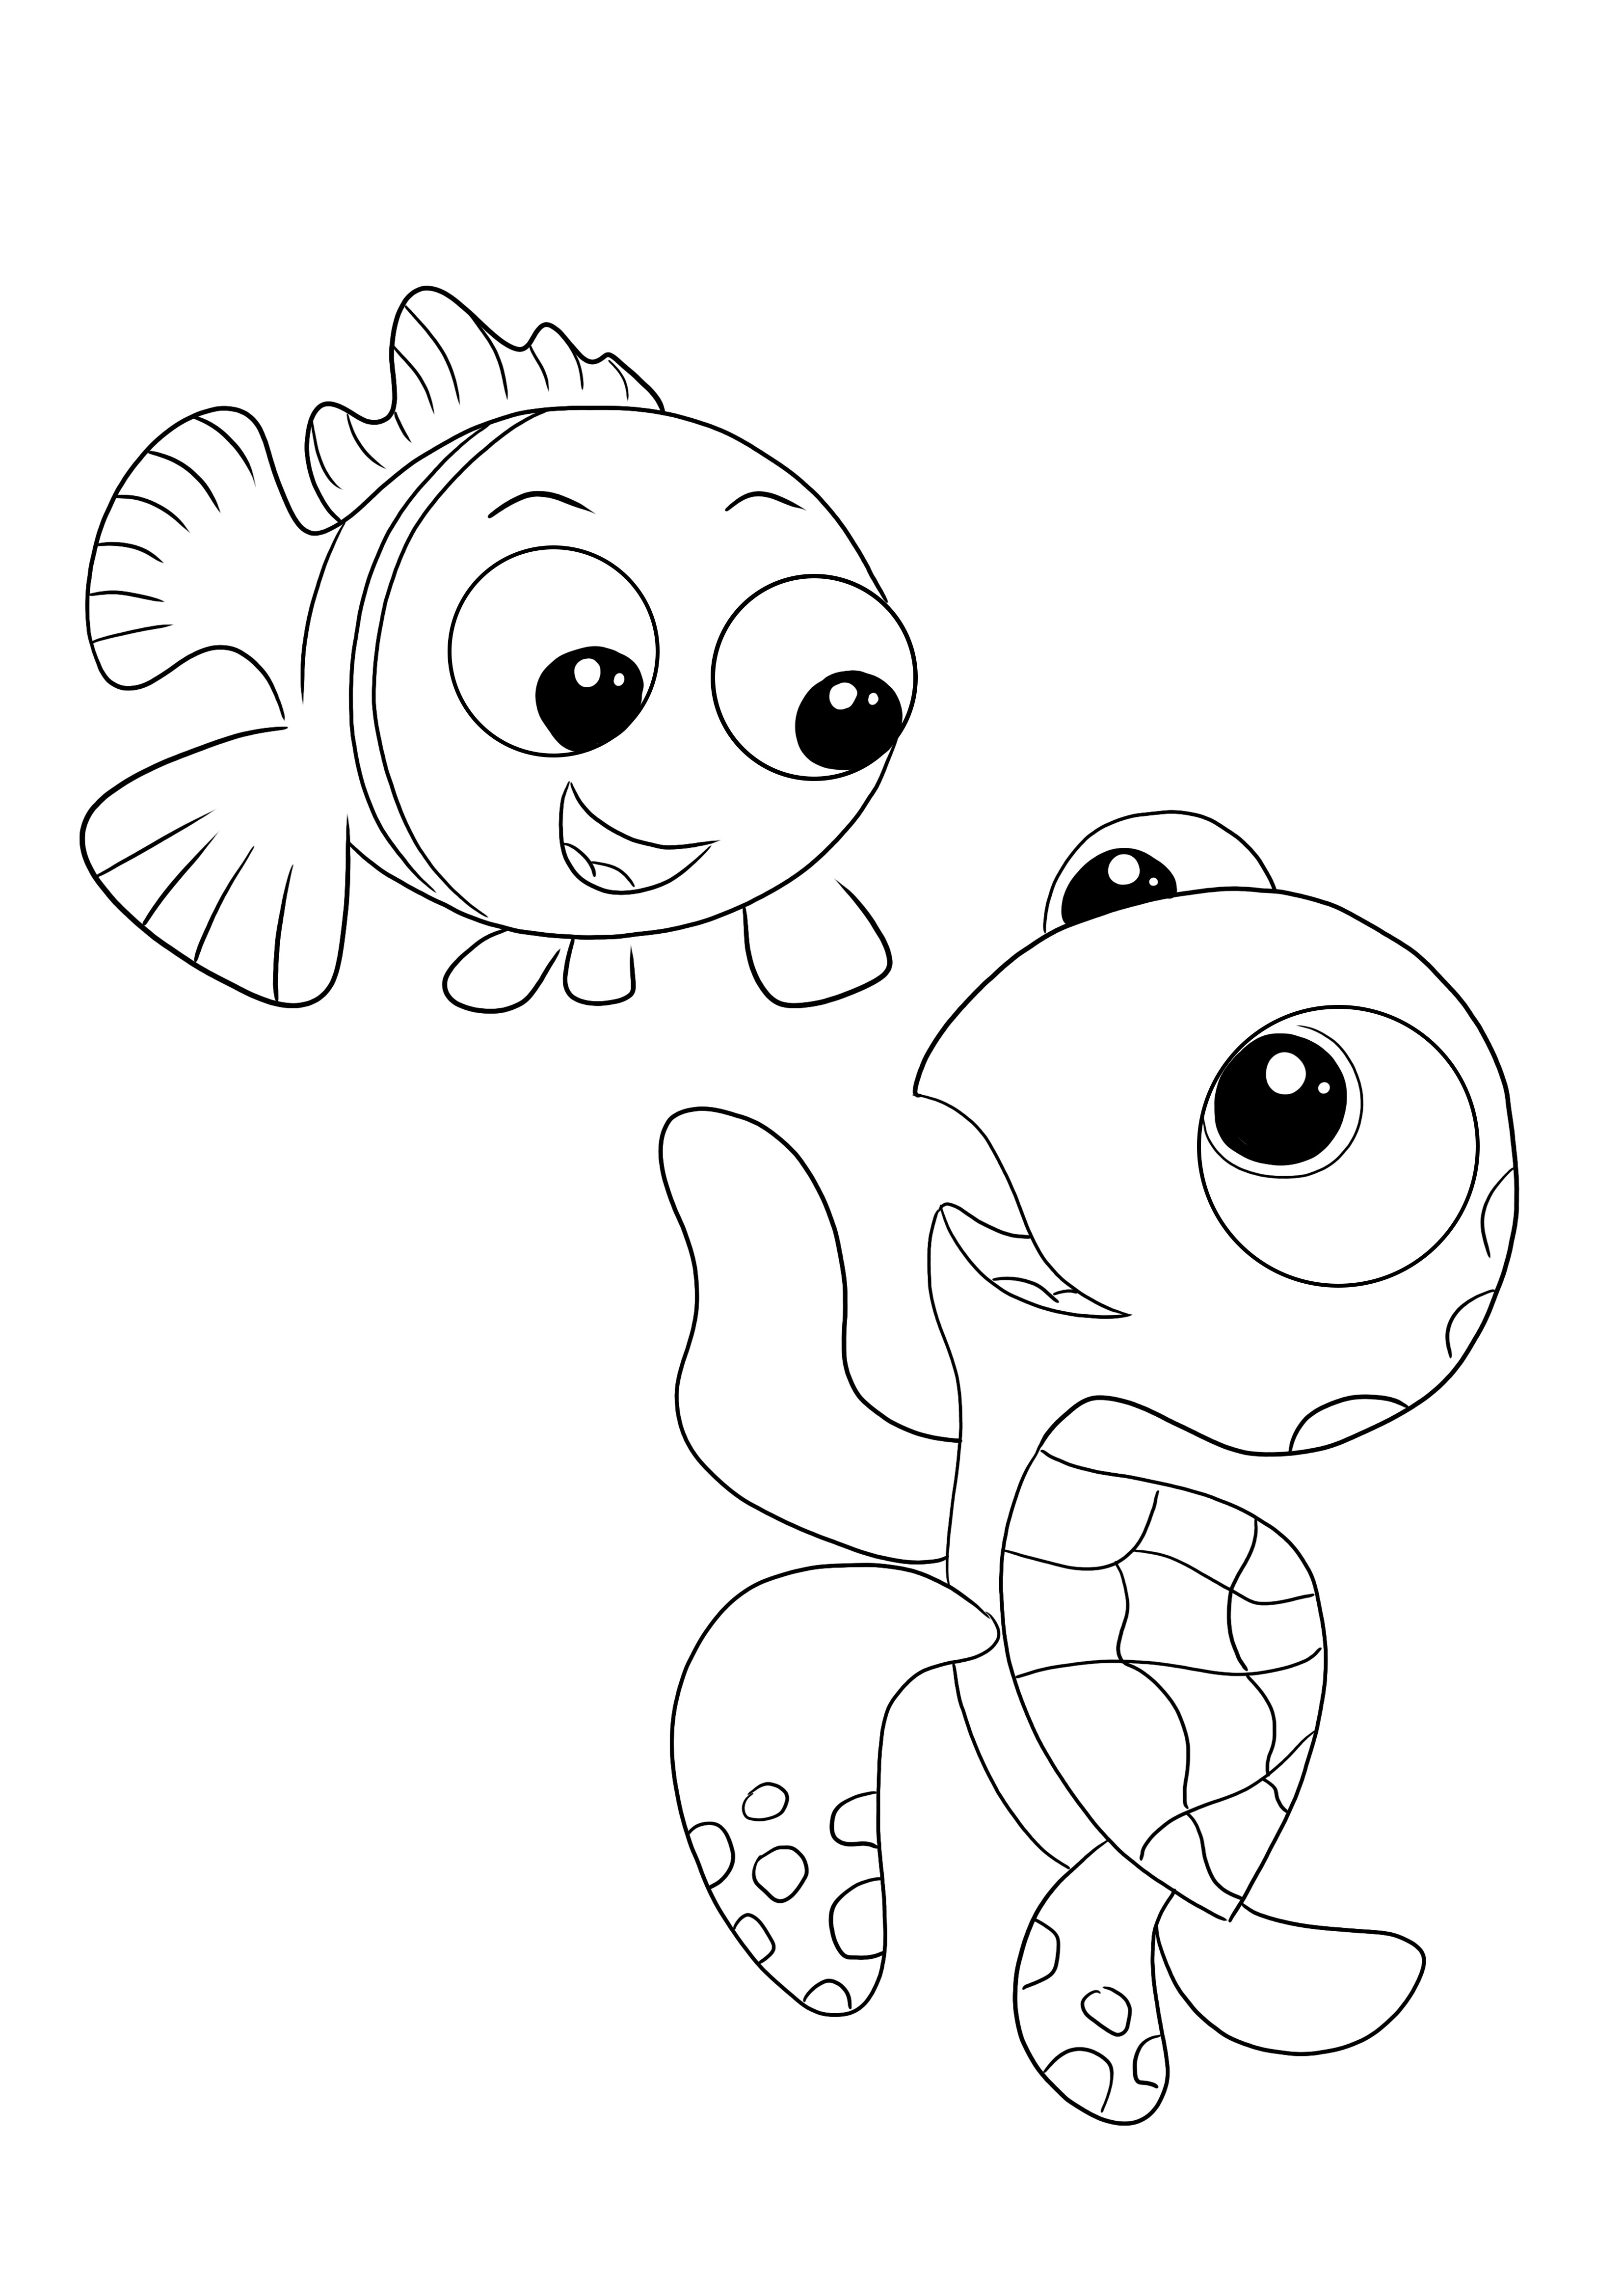 Gratis para colorear e imprimir Crush y Nemo imagen para colorear para niños